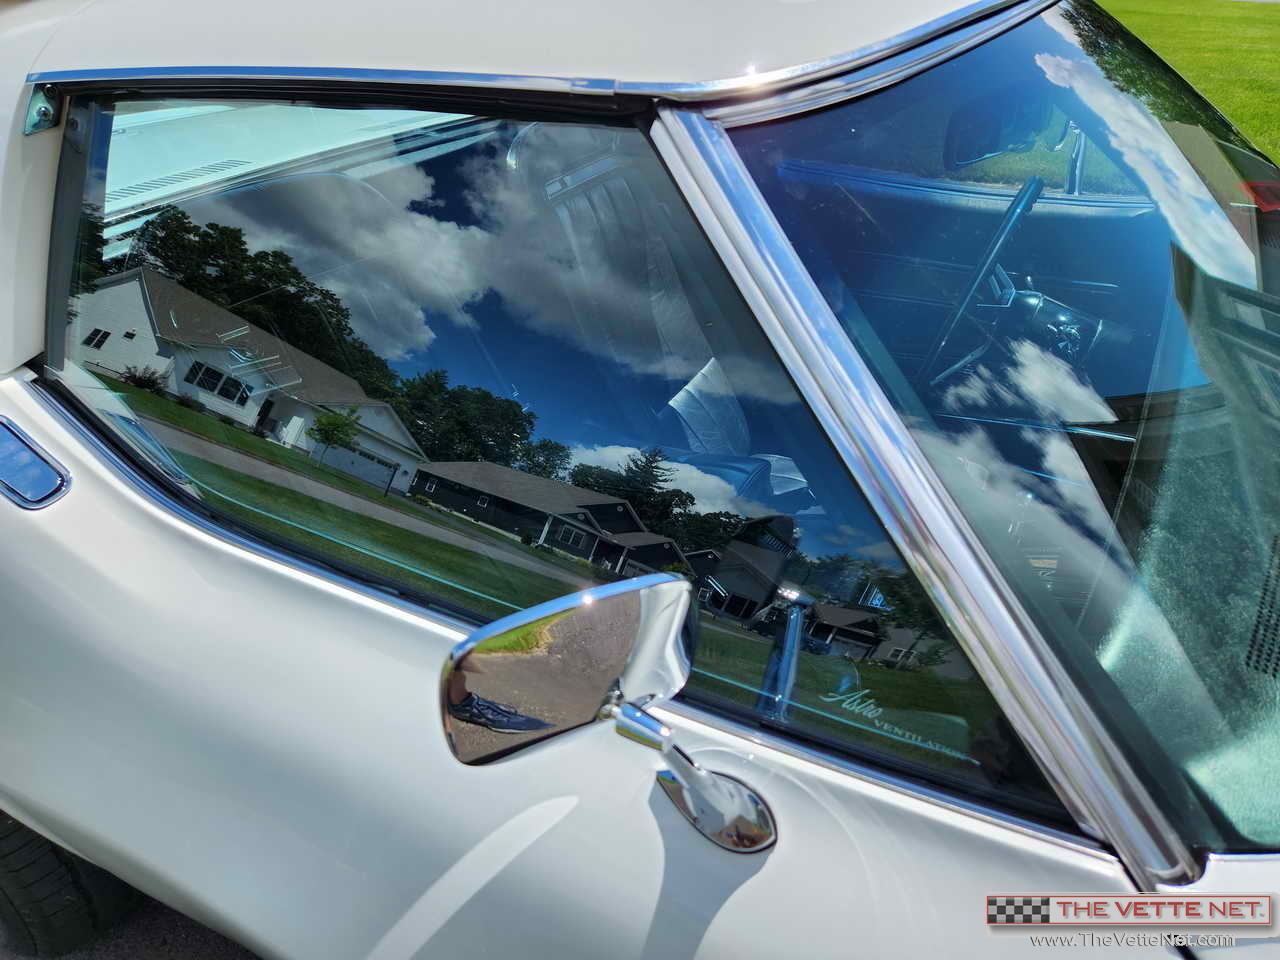 1971 Corvette Coupe Classic White